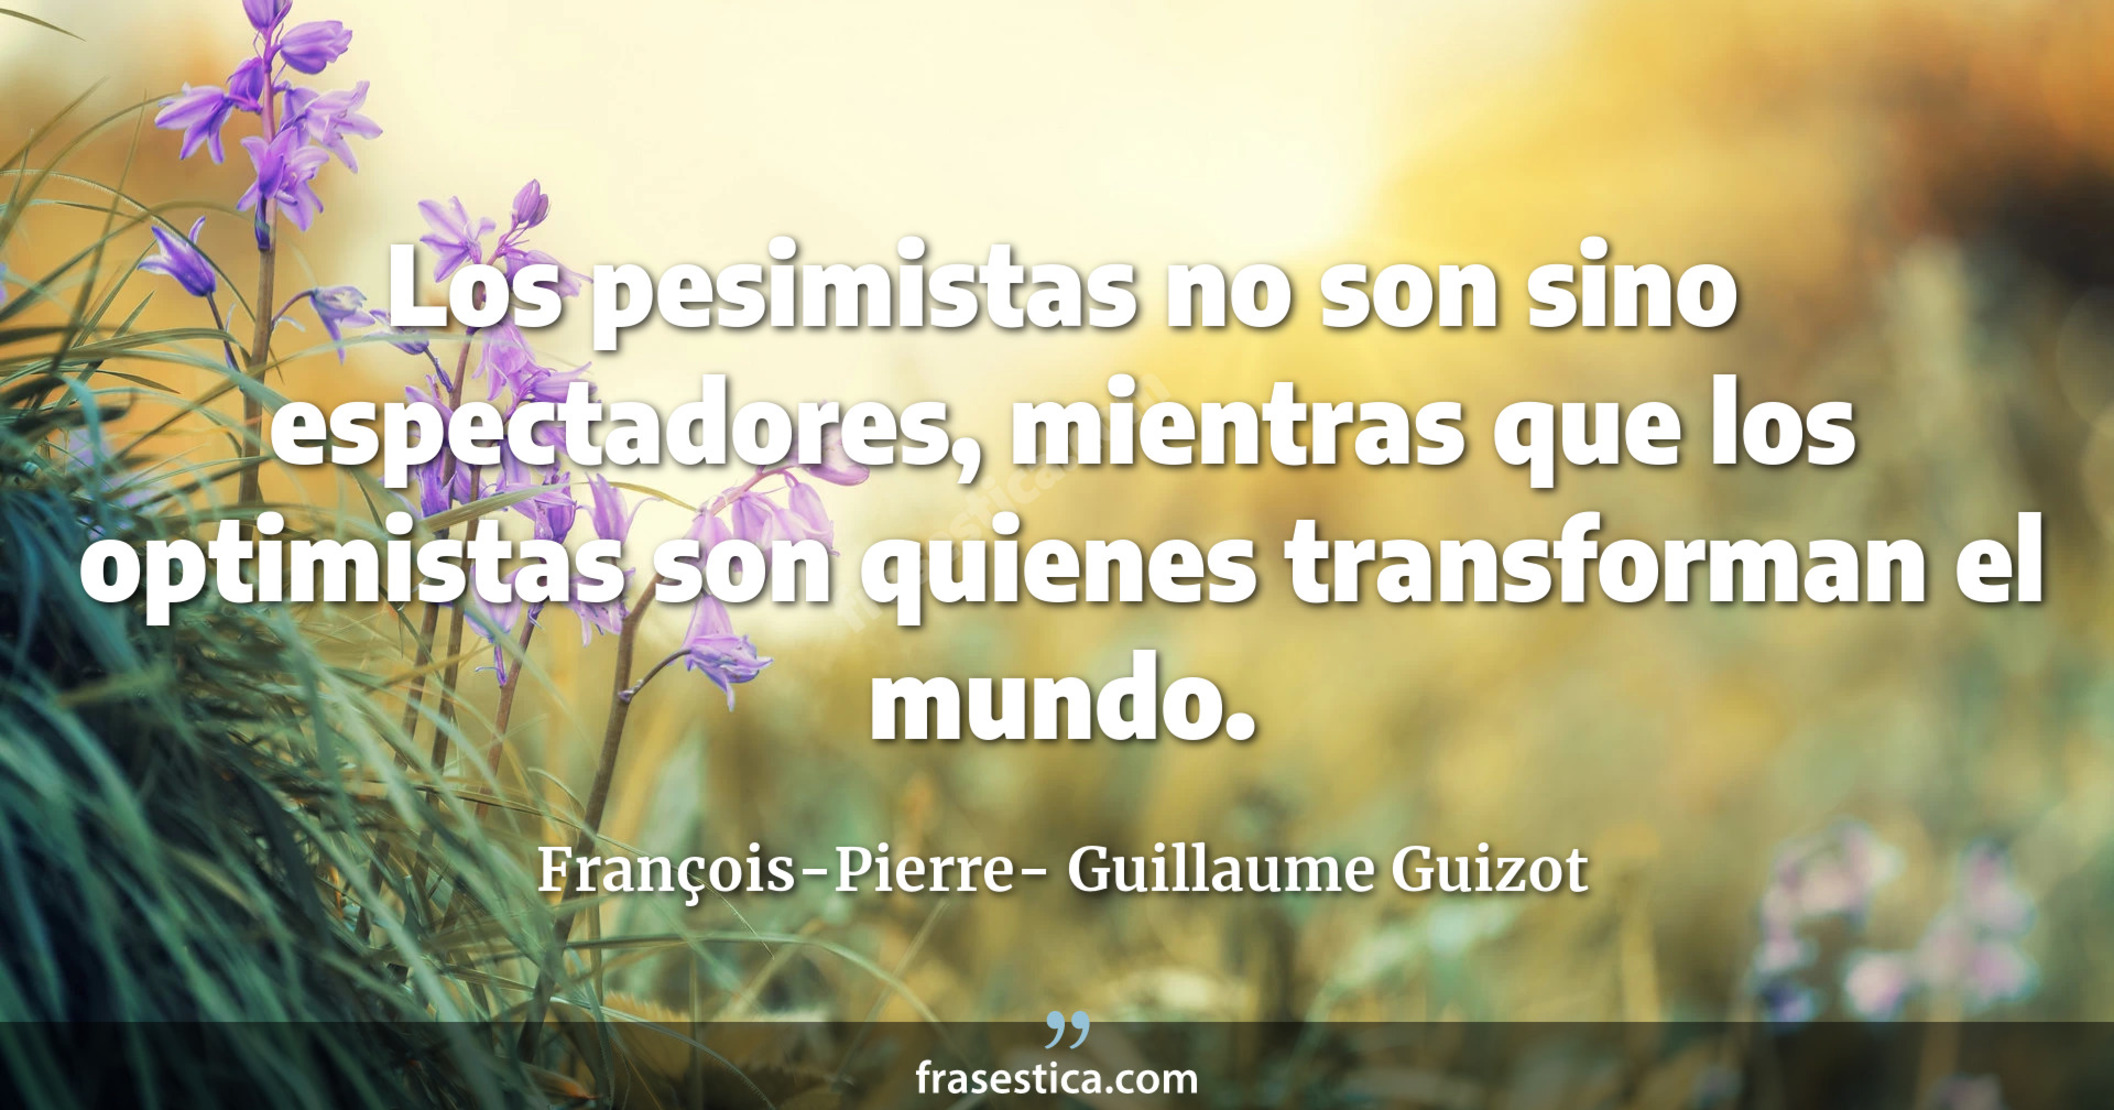 Los pesimistas no son sino espectadores, mientras que los optimistas son quienes transforman el mundo.  - François-Pierre- Guillaume Guizot